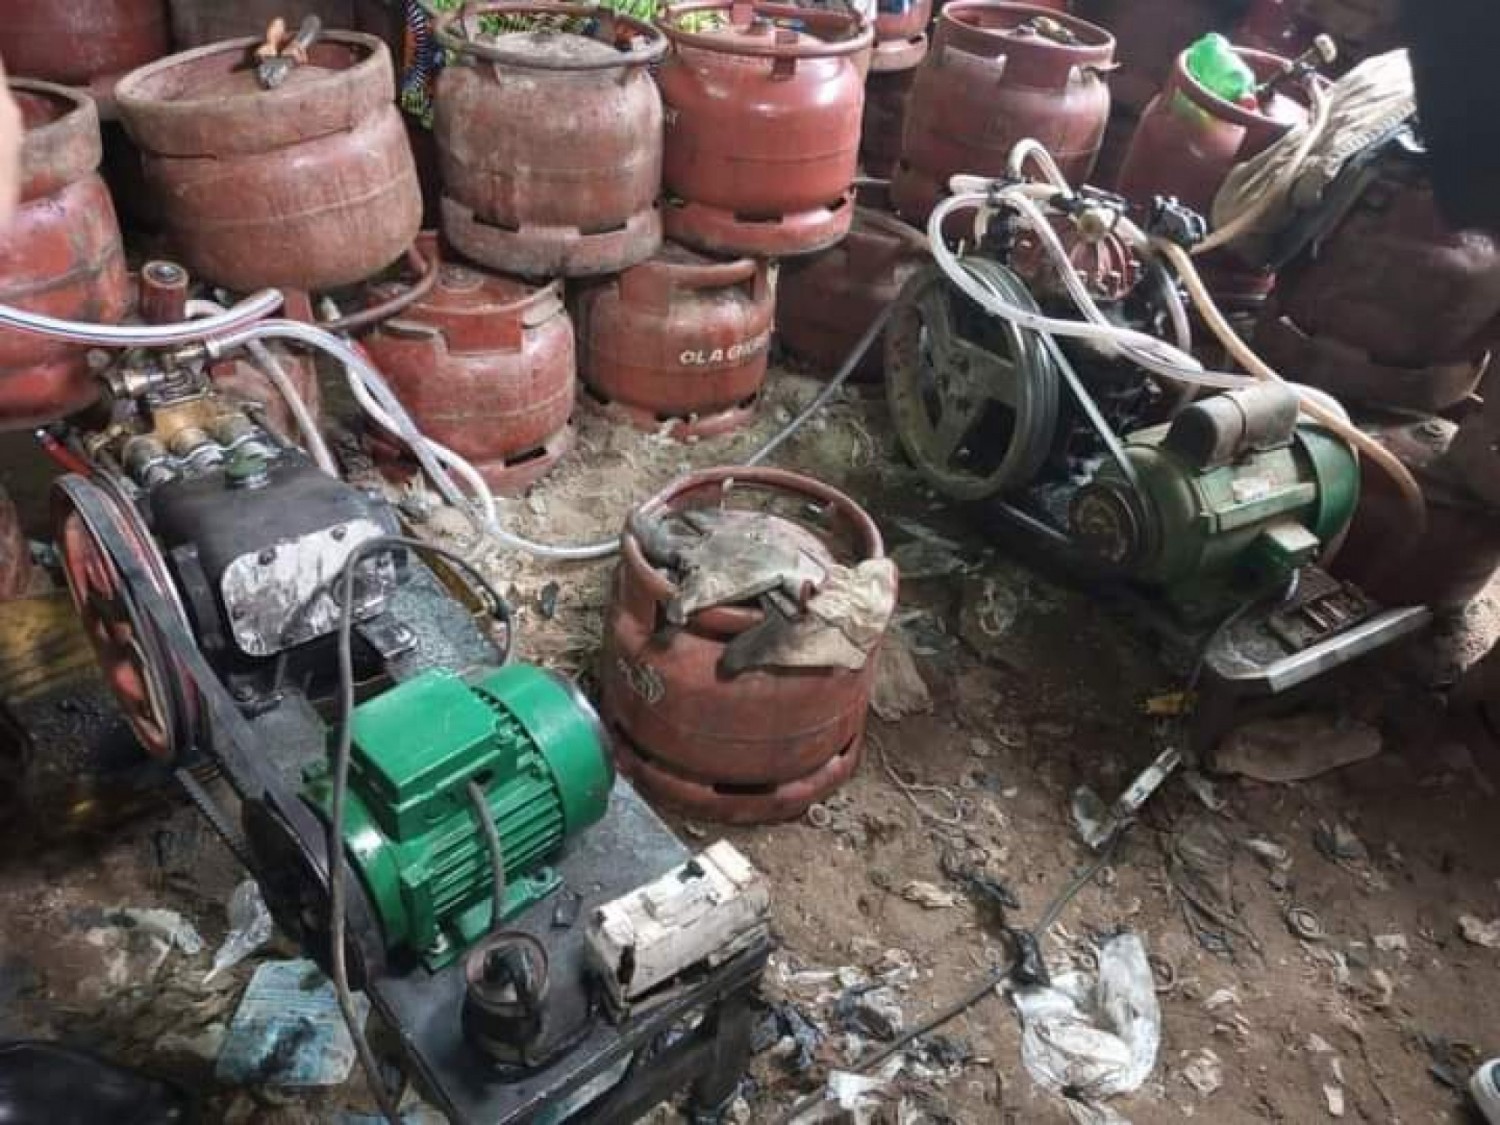 Côte d'Ivoire : Transvasement illégal de gaz, plus de 10 000 bouteilles butane saisies dans une opération anti-fraude